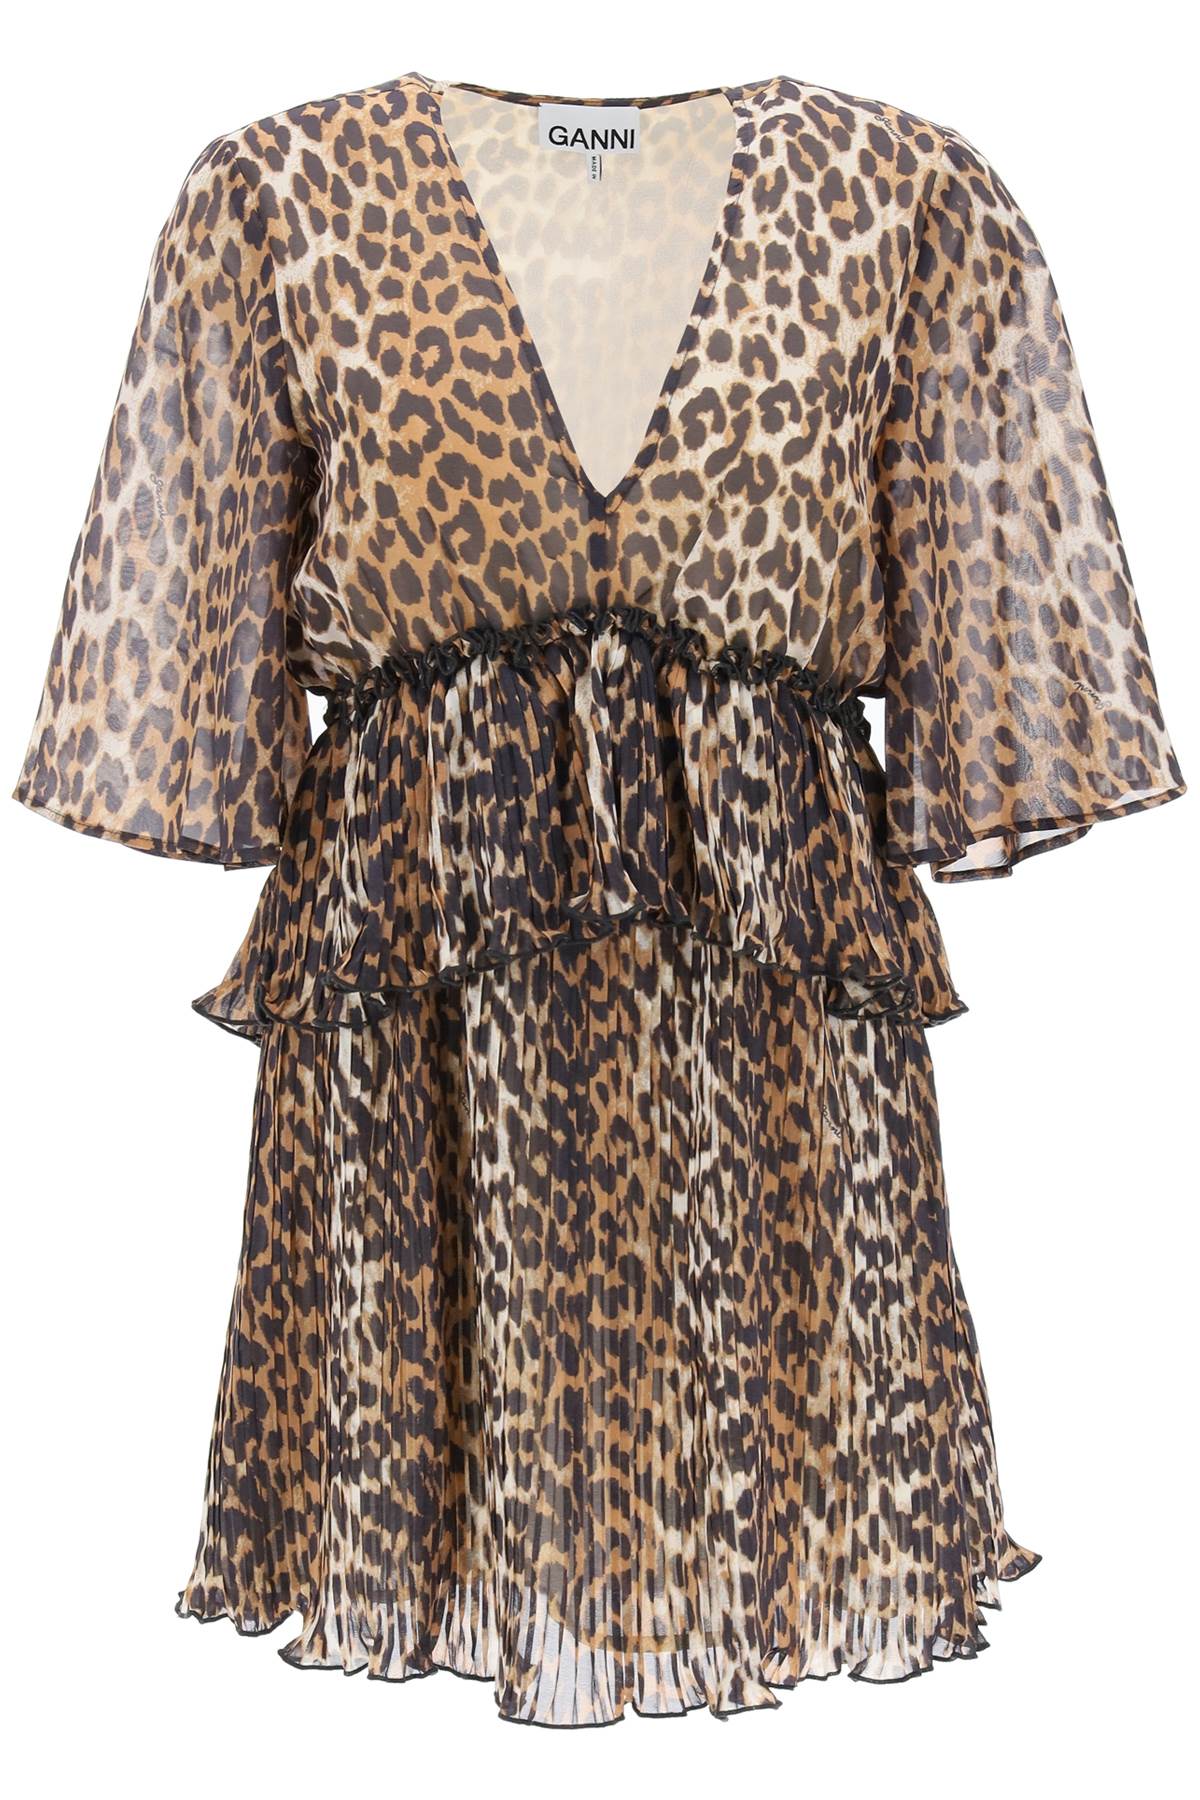 Ganni pleated mini dress with leopard motif-0